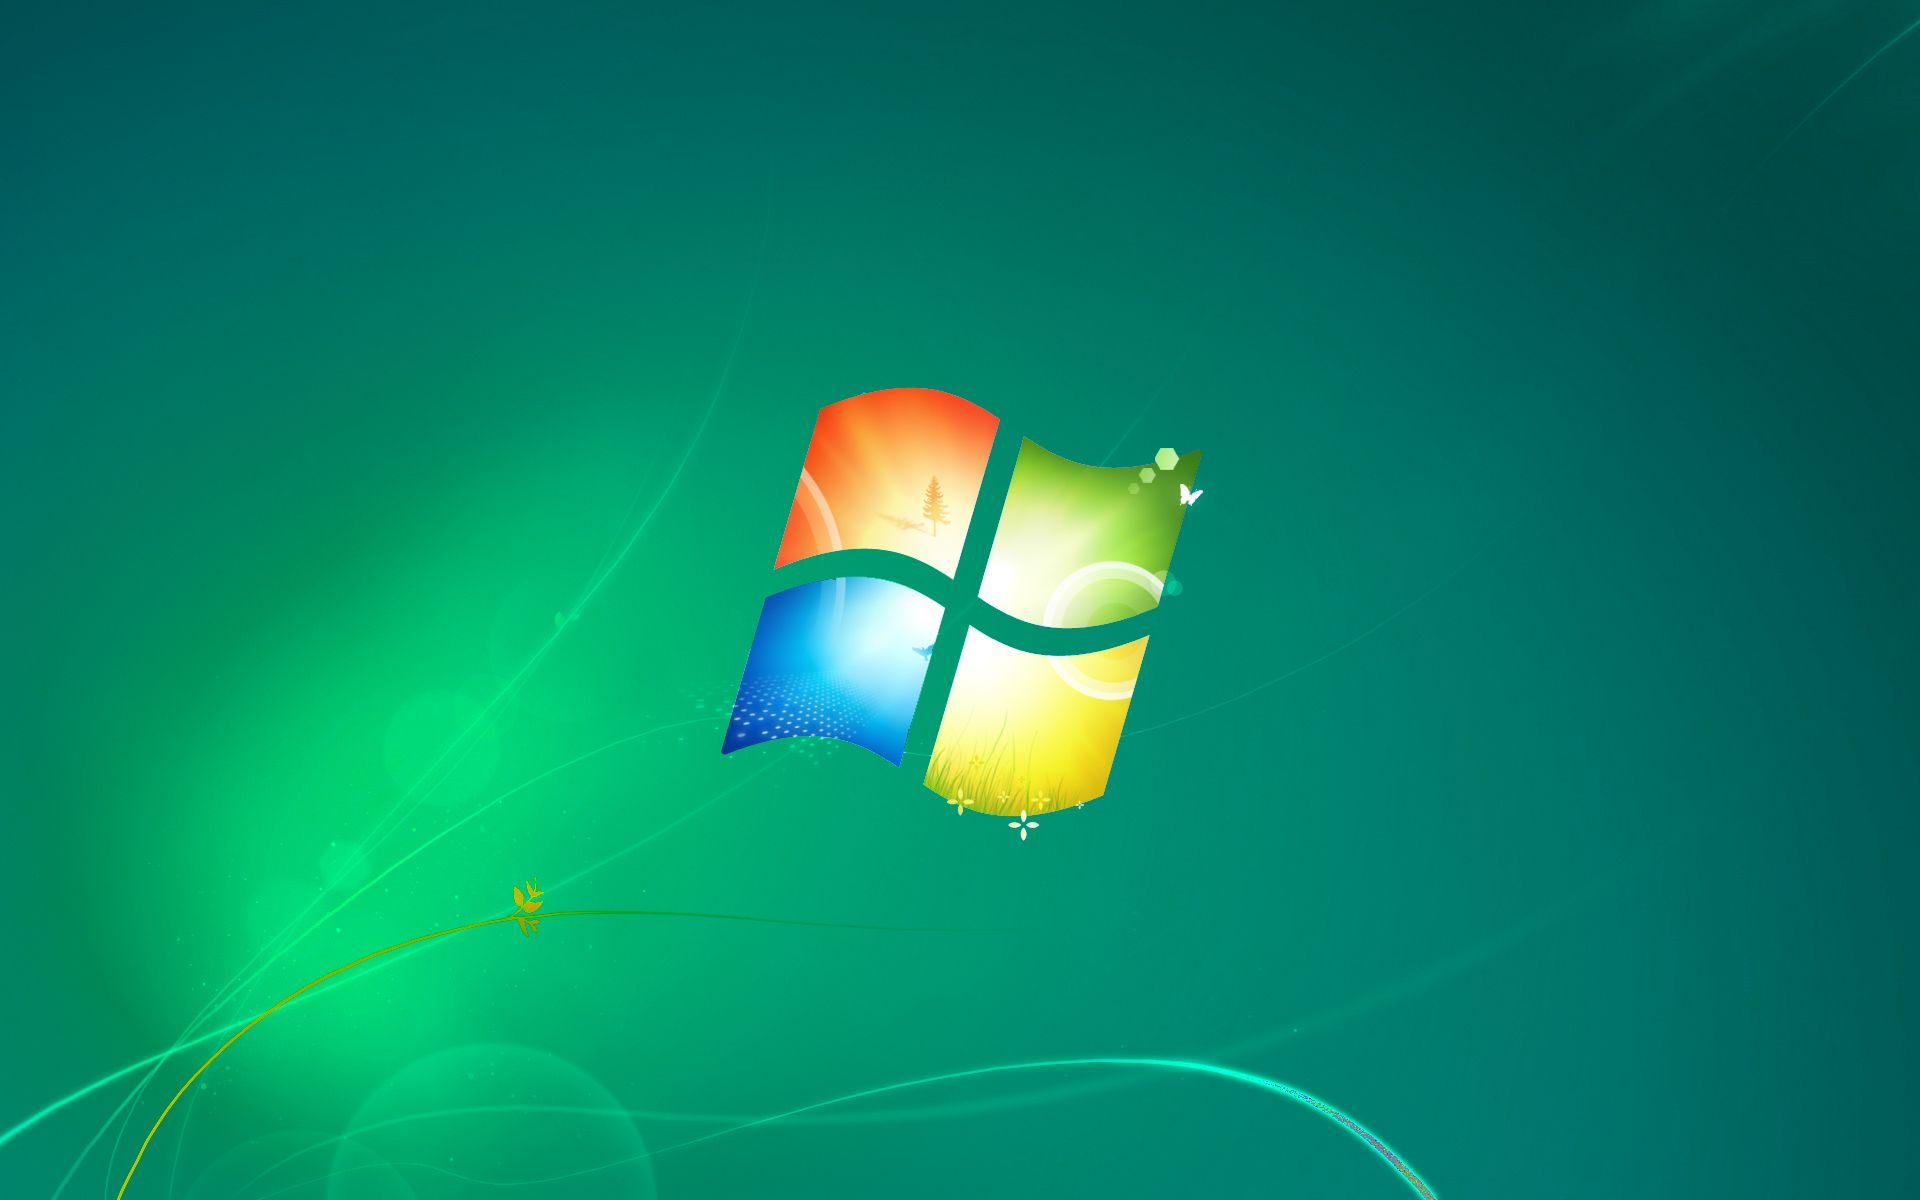 Windows 10 Original Wallpaper , HD Wallpaper & Backgrounds